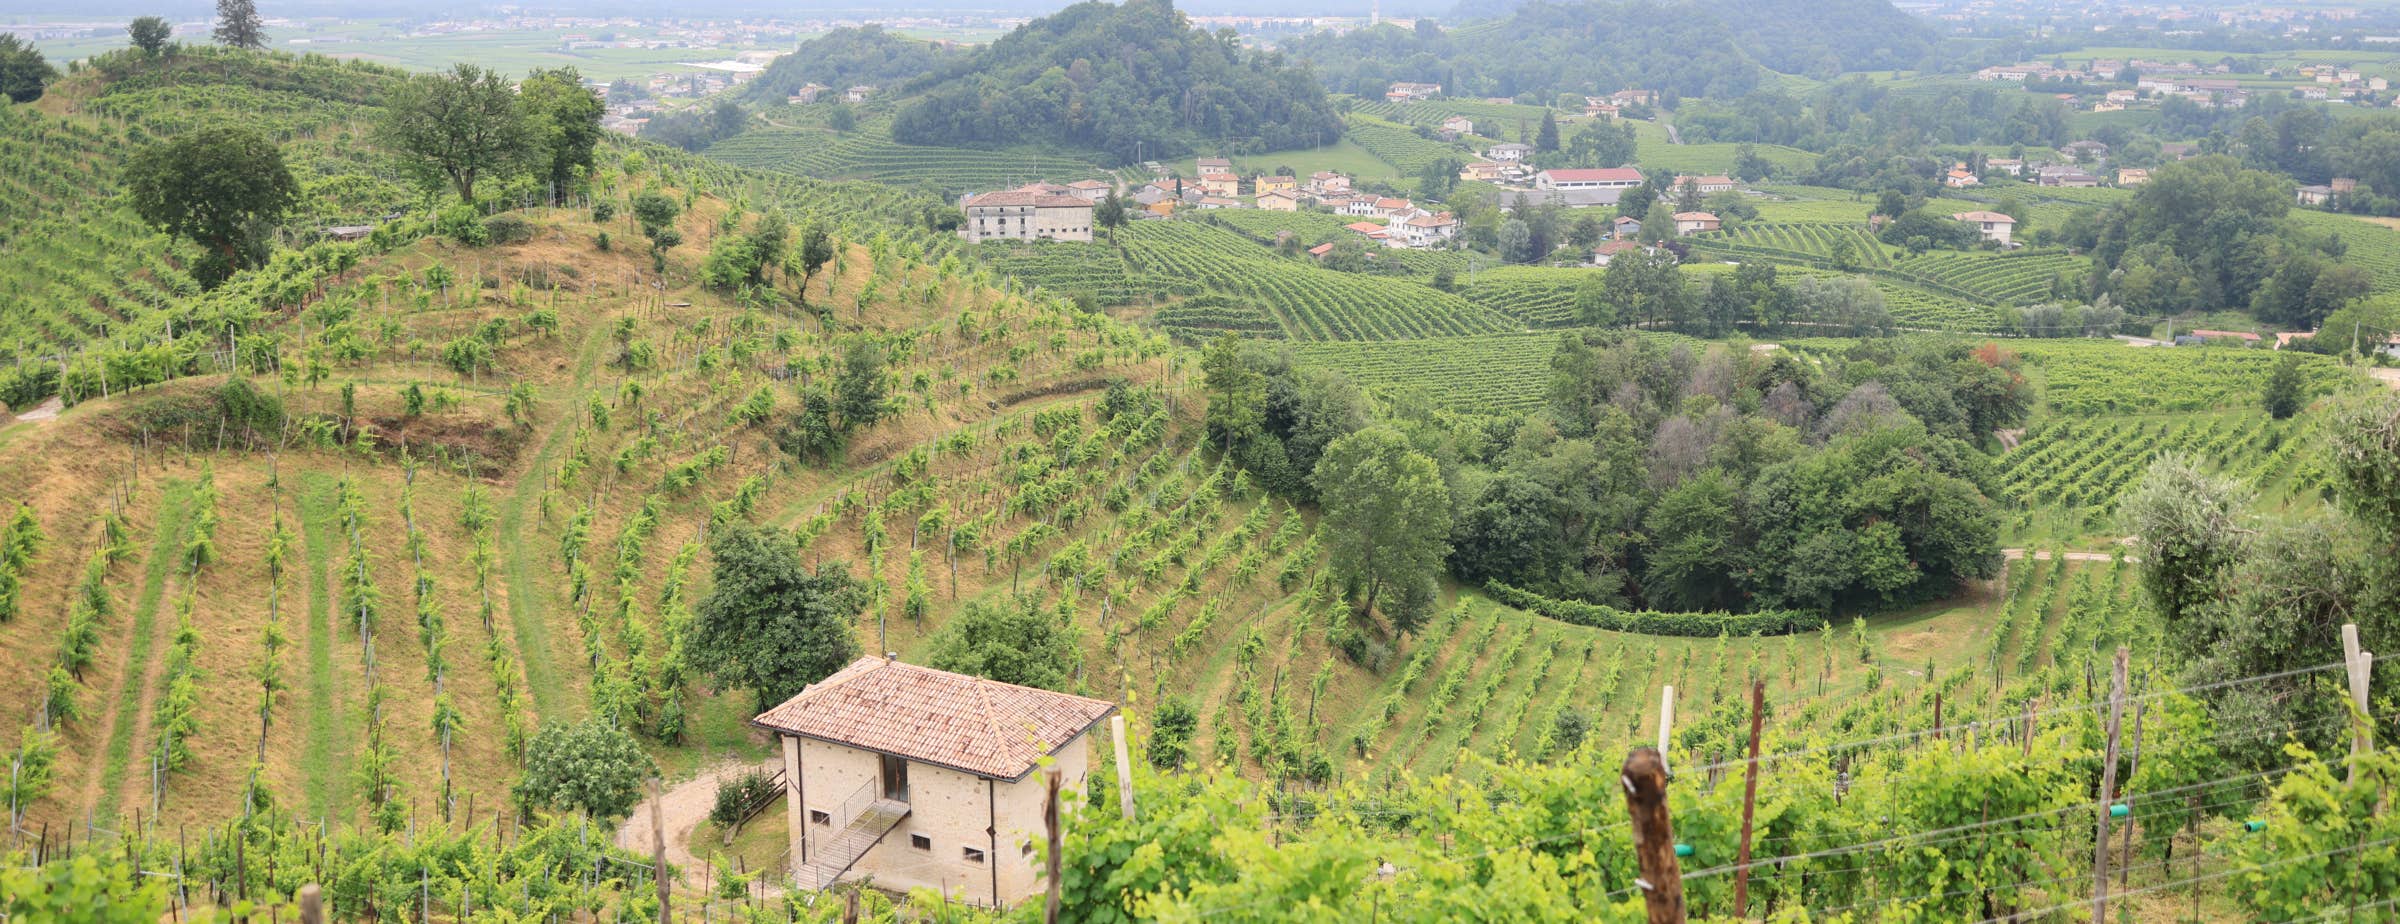 Slika prikazuje vinograde na brežuljkastim terenima s izoliranim kućicama i malim skupinama zgrada između parcela vinograda.